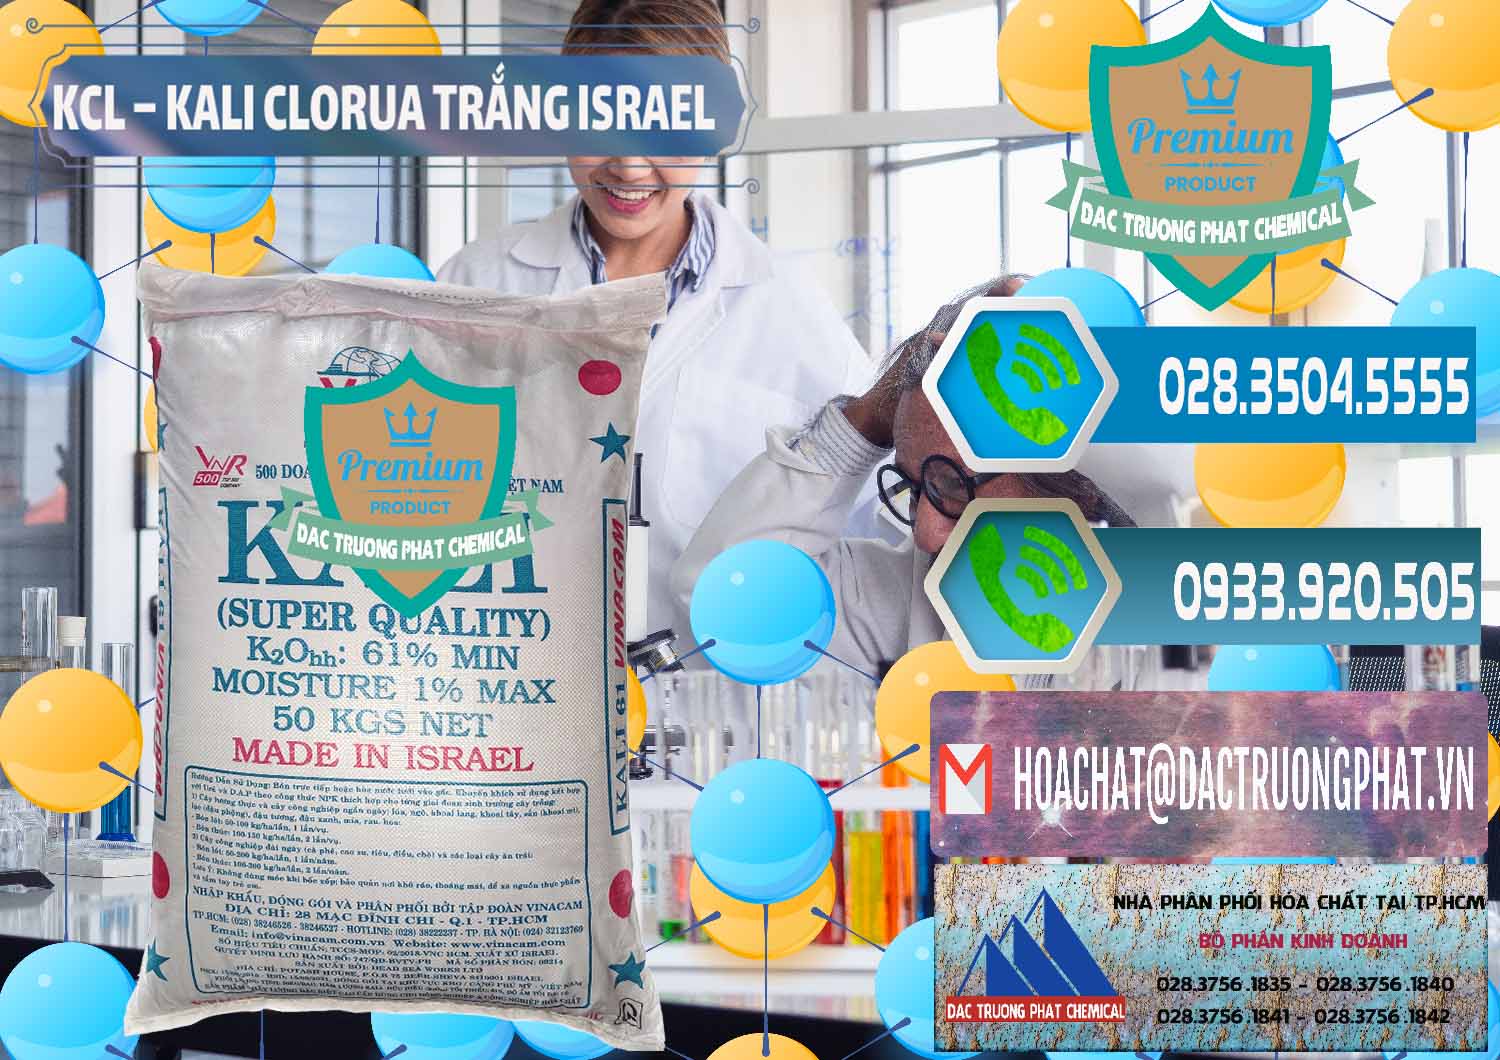 Cty chuyên phân phối - bán KCL – Kali Clorua Trắng Israel - 0087 - Cty chuyên kinh doanh ( phân phối ) hóa chất tại TP.HCM - congtyhoachat.net